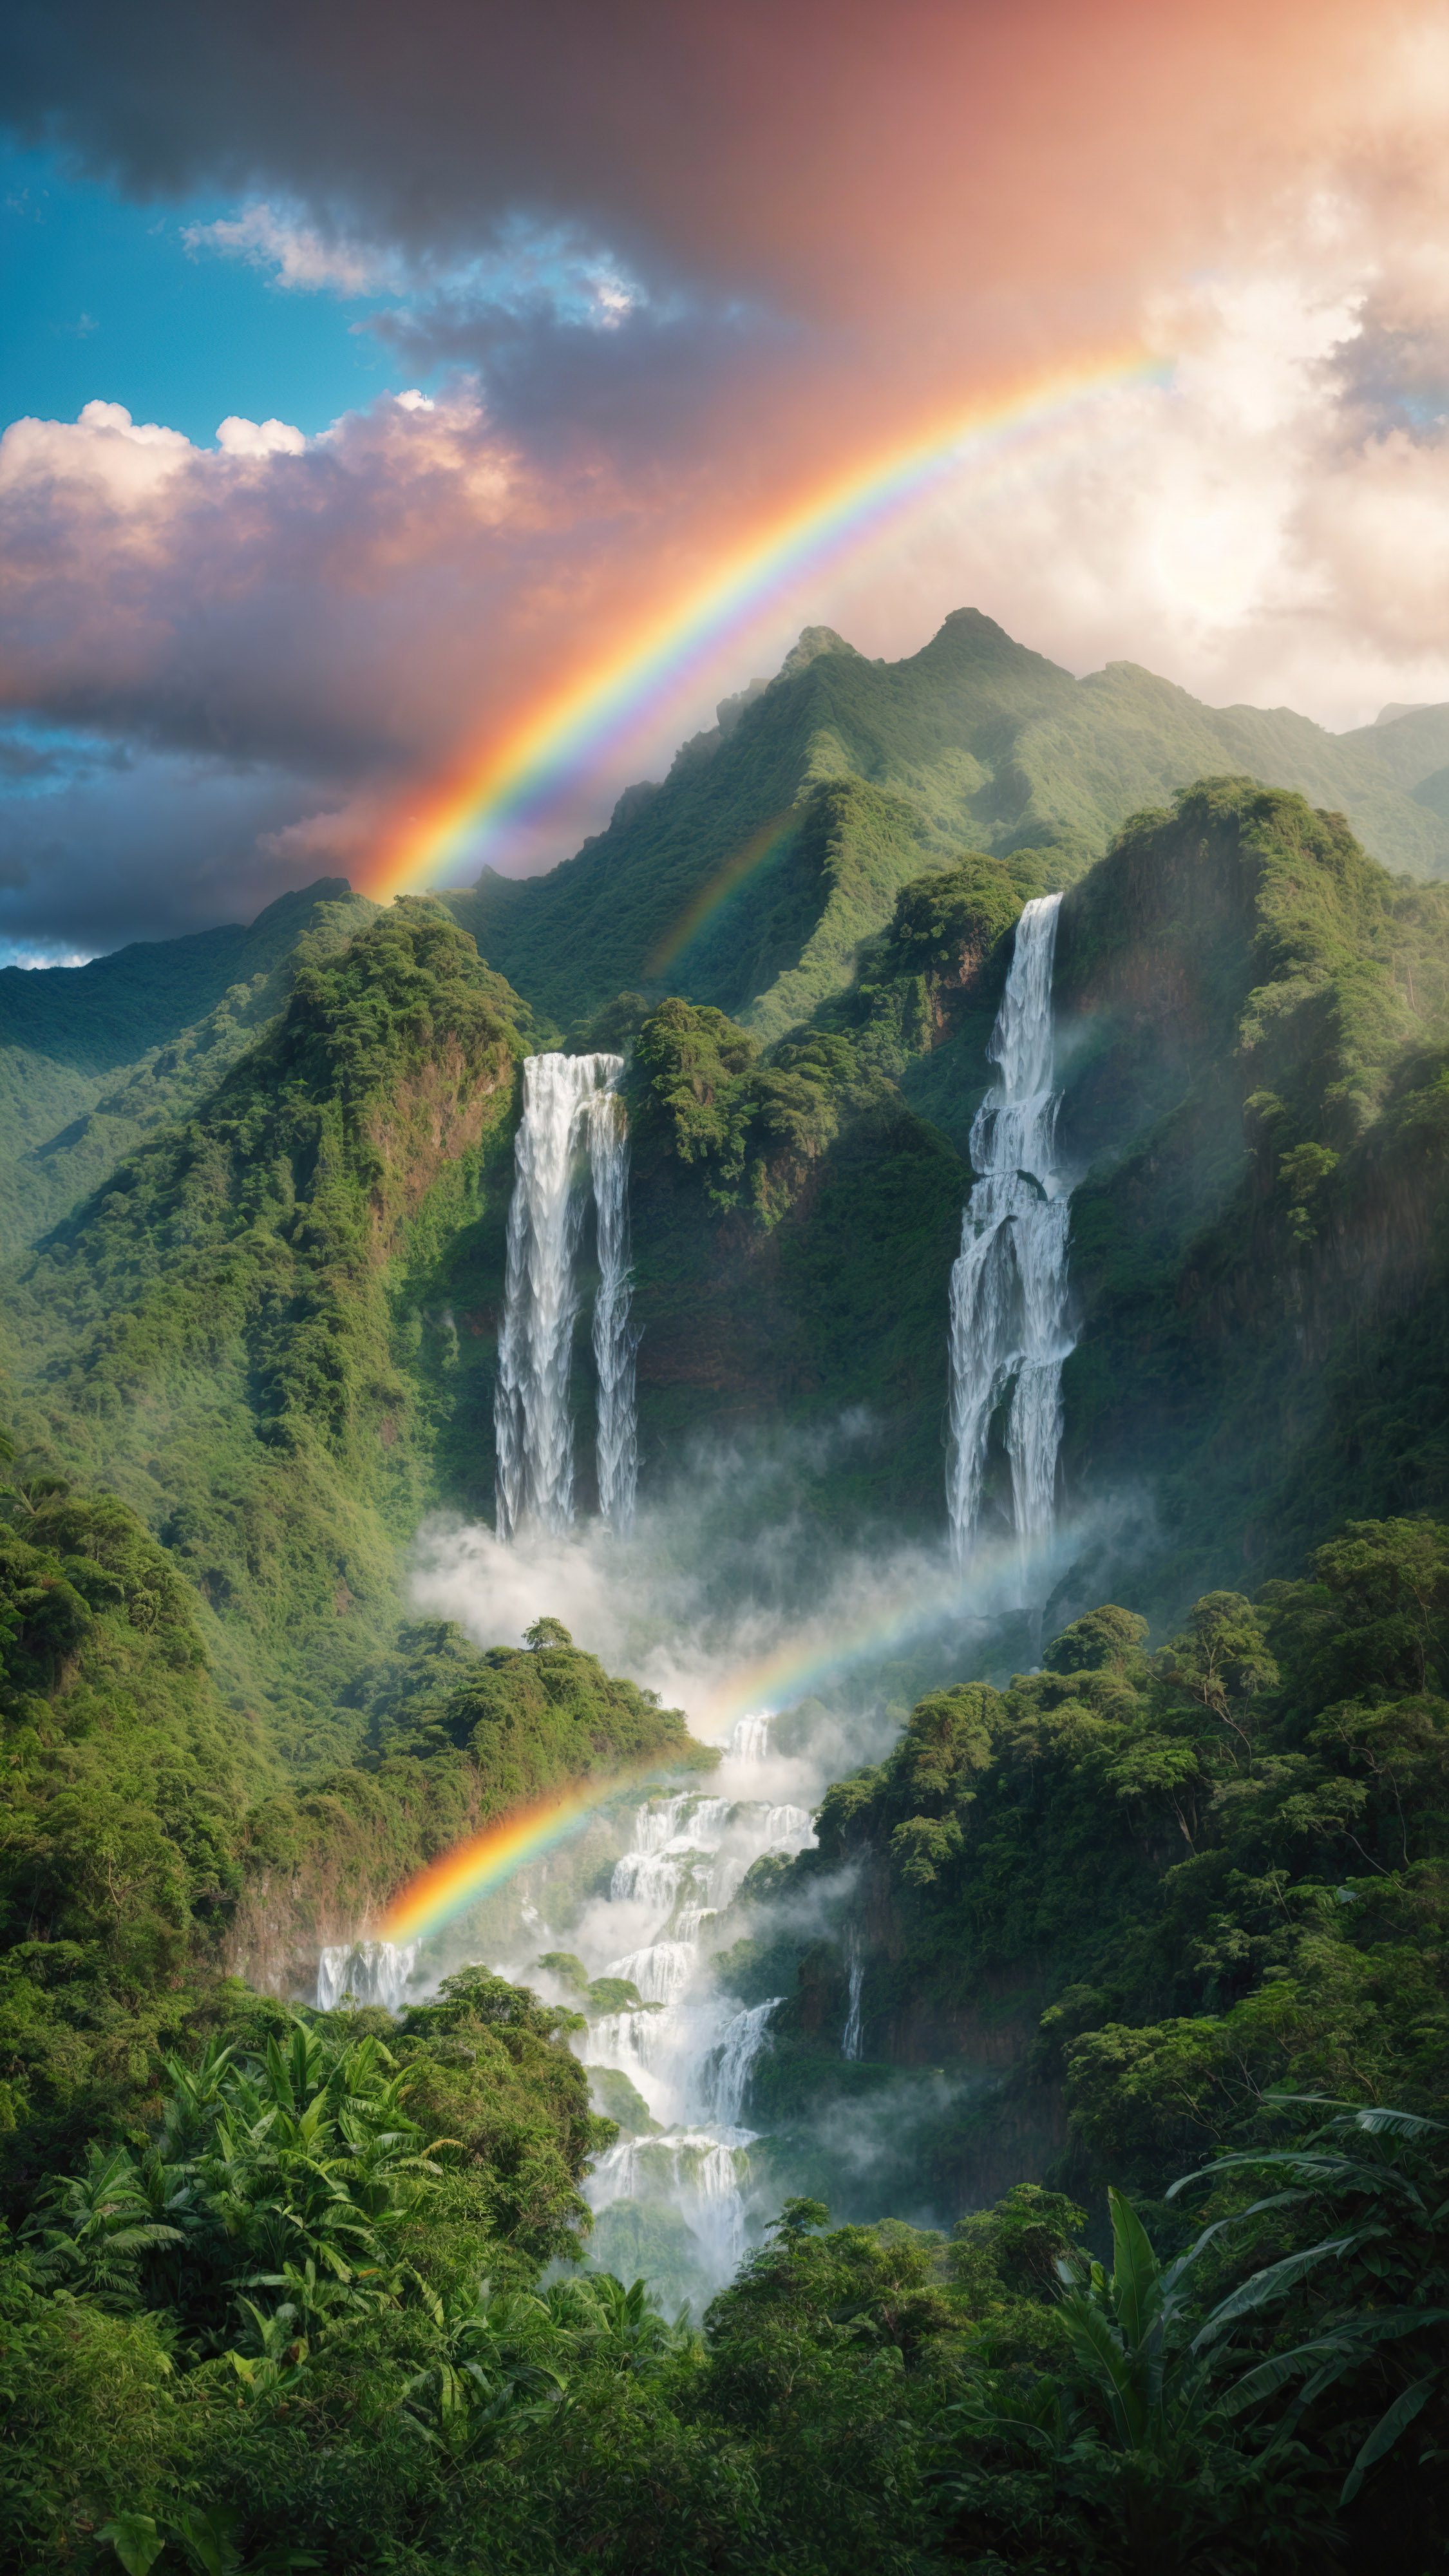 Immergez-vous dans la luxuriance d'une montagne tropicale avec une jungle et une cascade, complétée par un arc-en-ciel et un ciel bleu, avec notre fond d'écran de montagne en 4K pour iPhone.